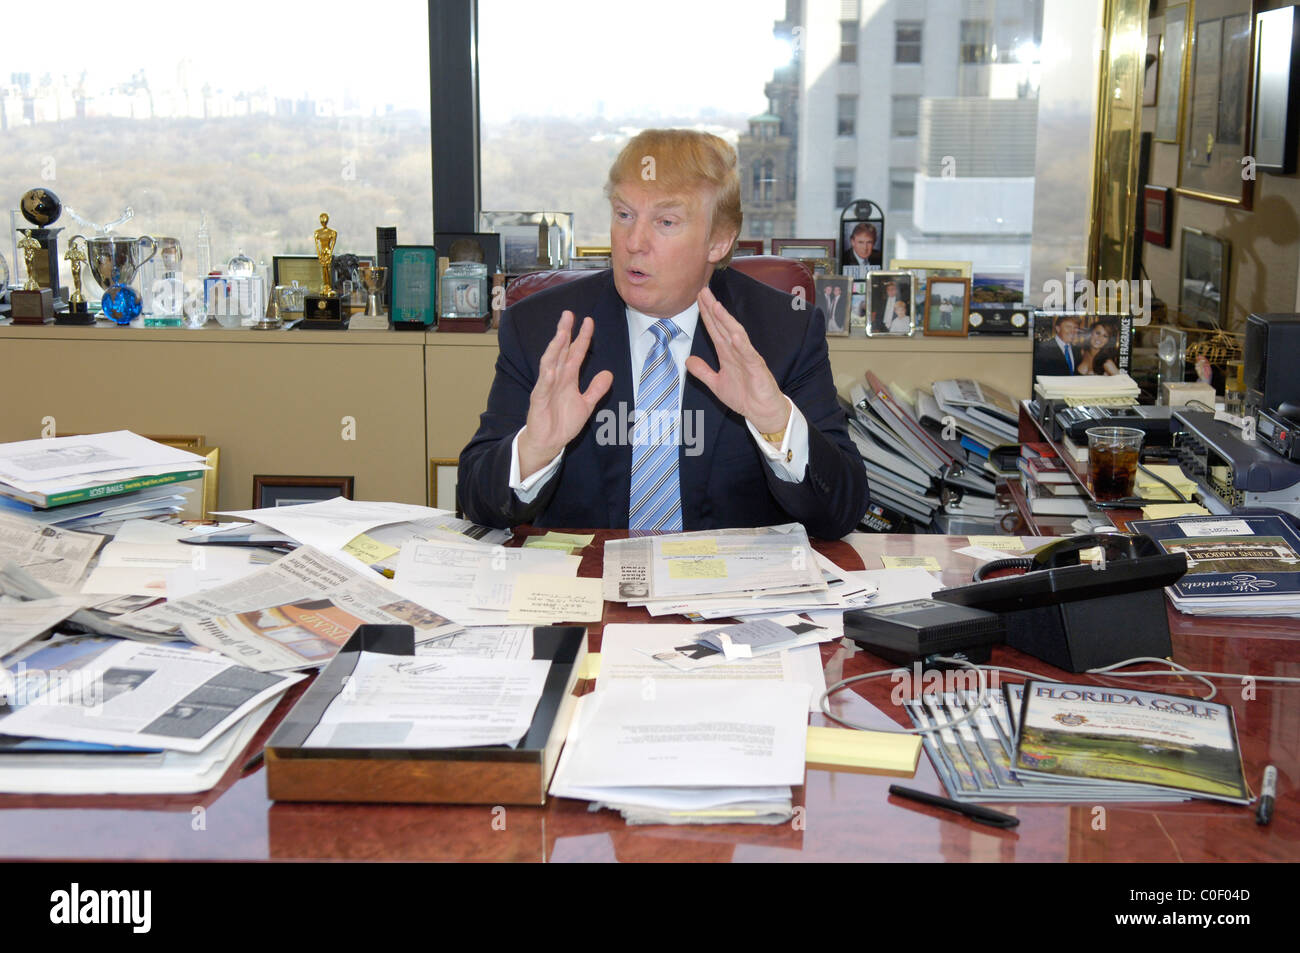 28 Trump Desk Trump S Desk Vs Obama S Desk Donald Trump 39